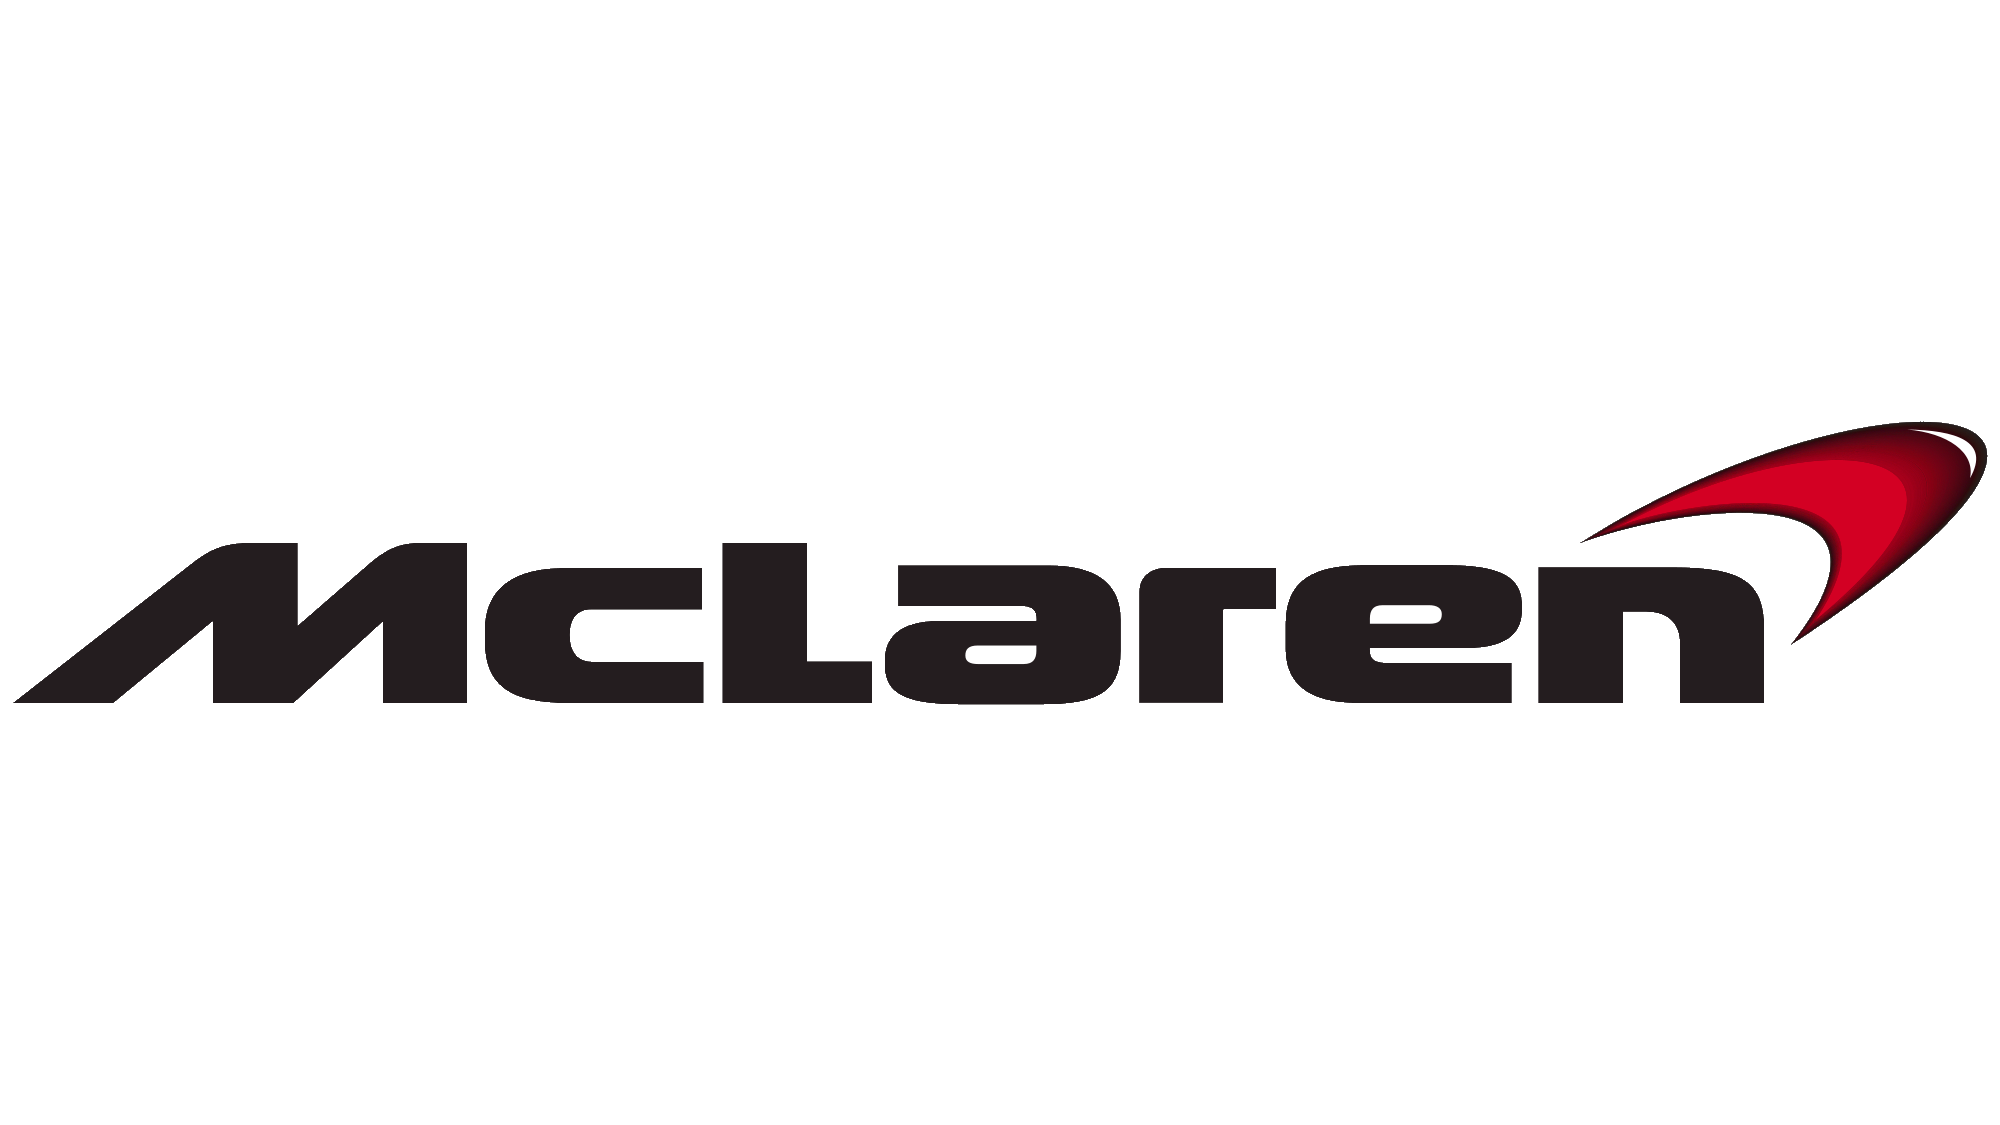 McLaren logosu